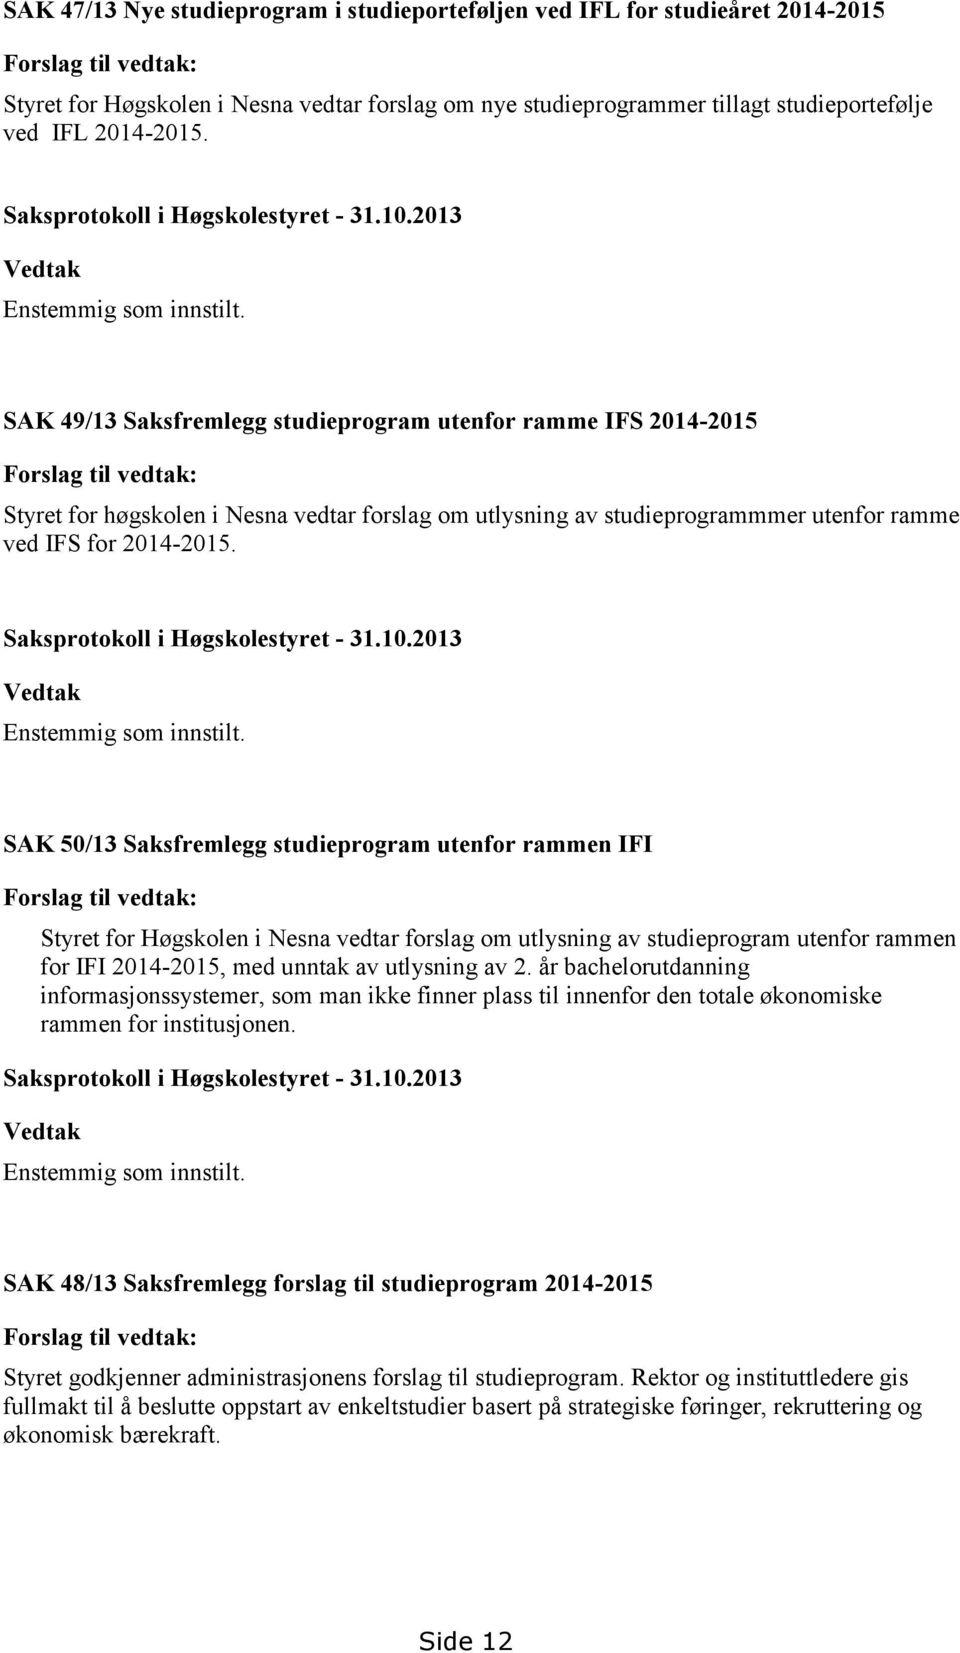 SAK 49/13 Saksfremlegg studieprogram utenfor ramme IFS 2014-2015 Forslag til vedtak: Styret for høgskolen i Nesna vedtar forslag om utlysning av studieprogrammmer utenfor ramme ved IFS for 2014-2015.